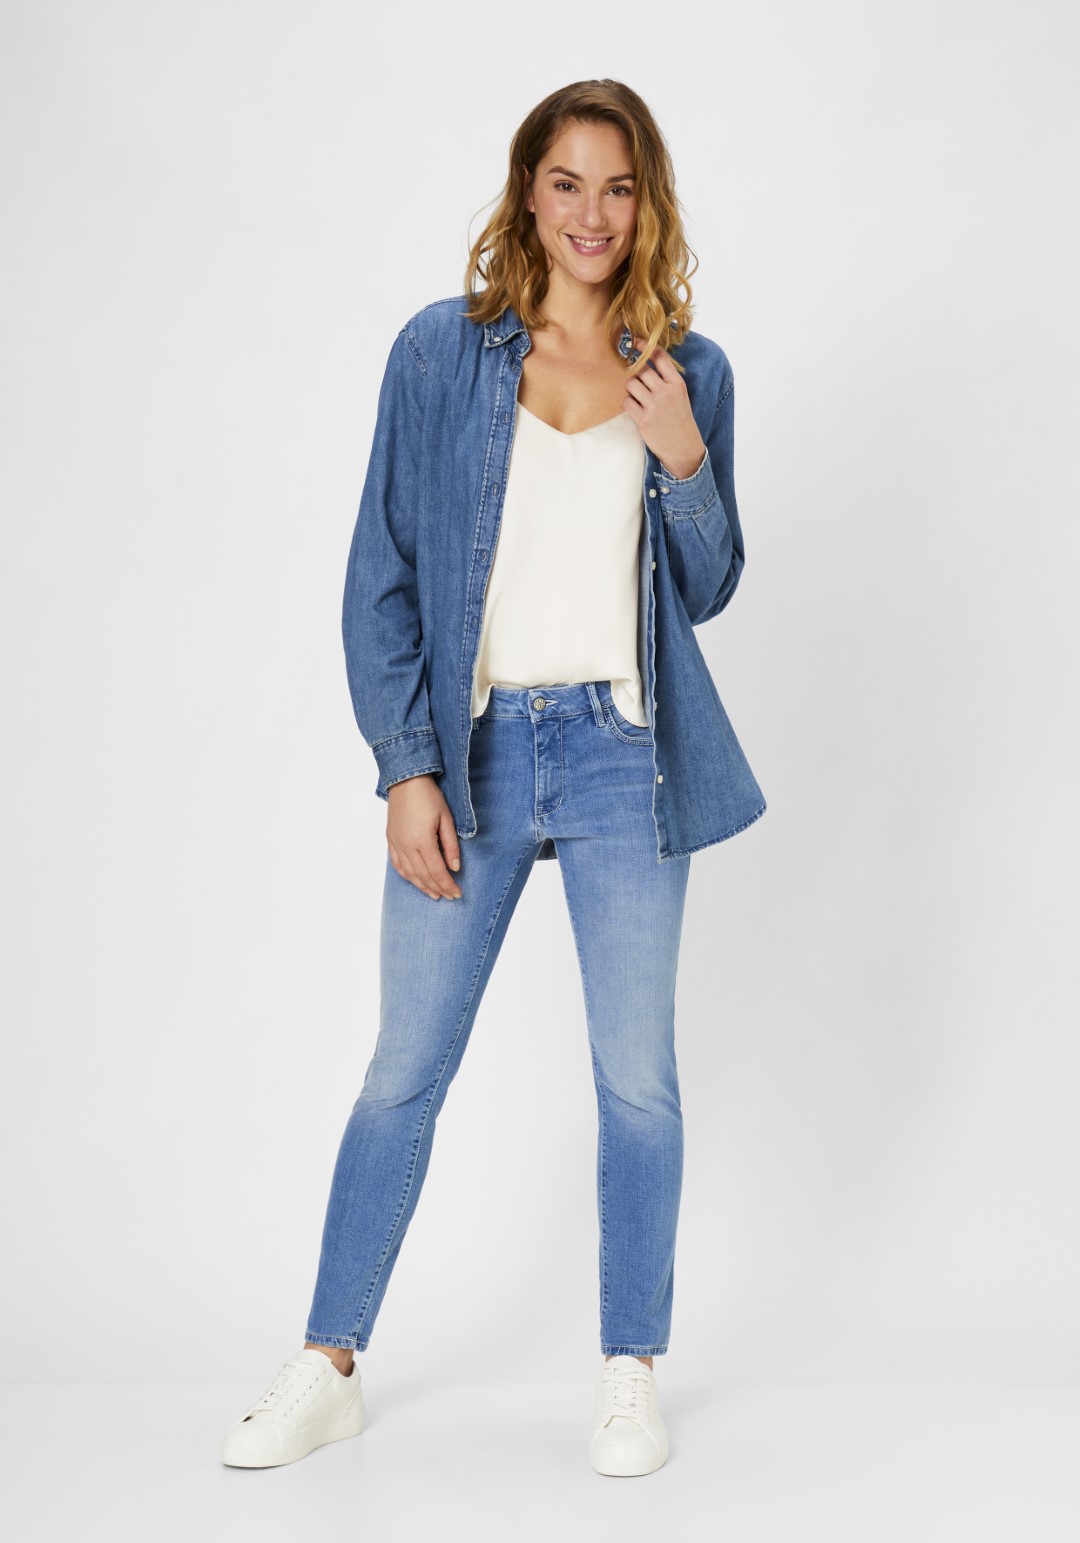 Damen-Jeans direkt vom Hersteller kaufen | PADDOCK'S Online Shop